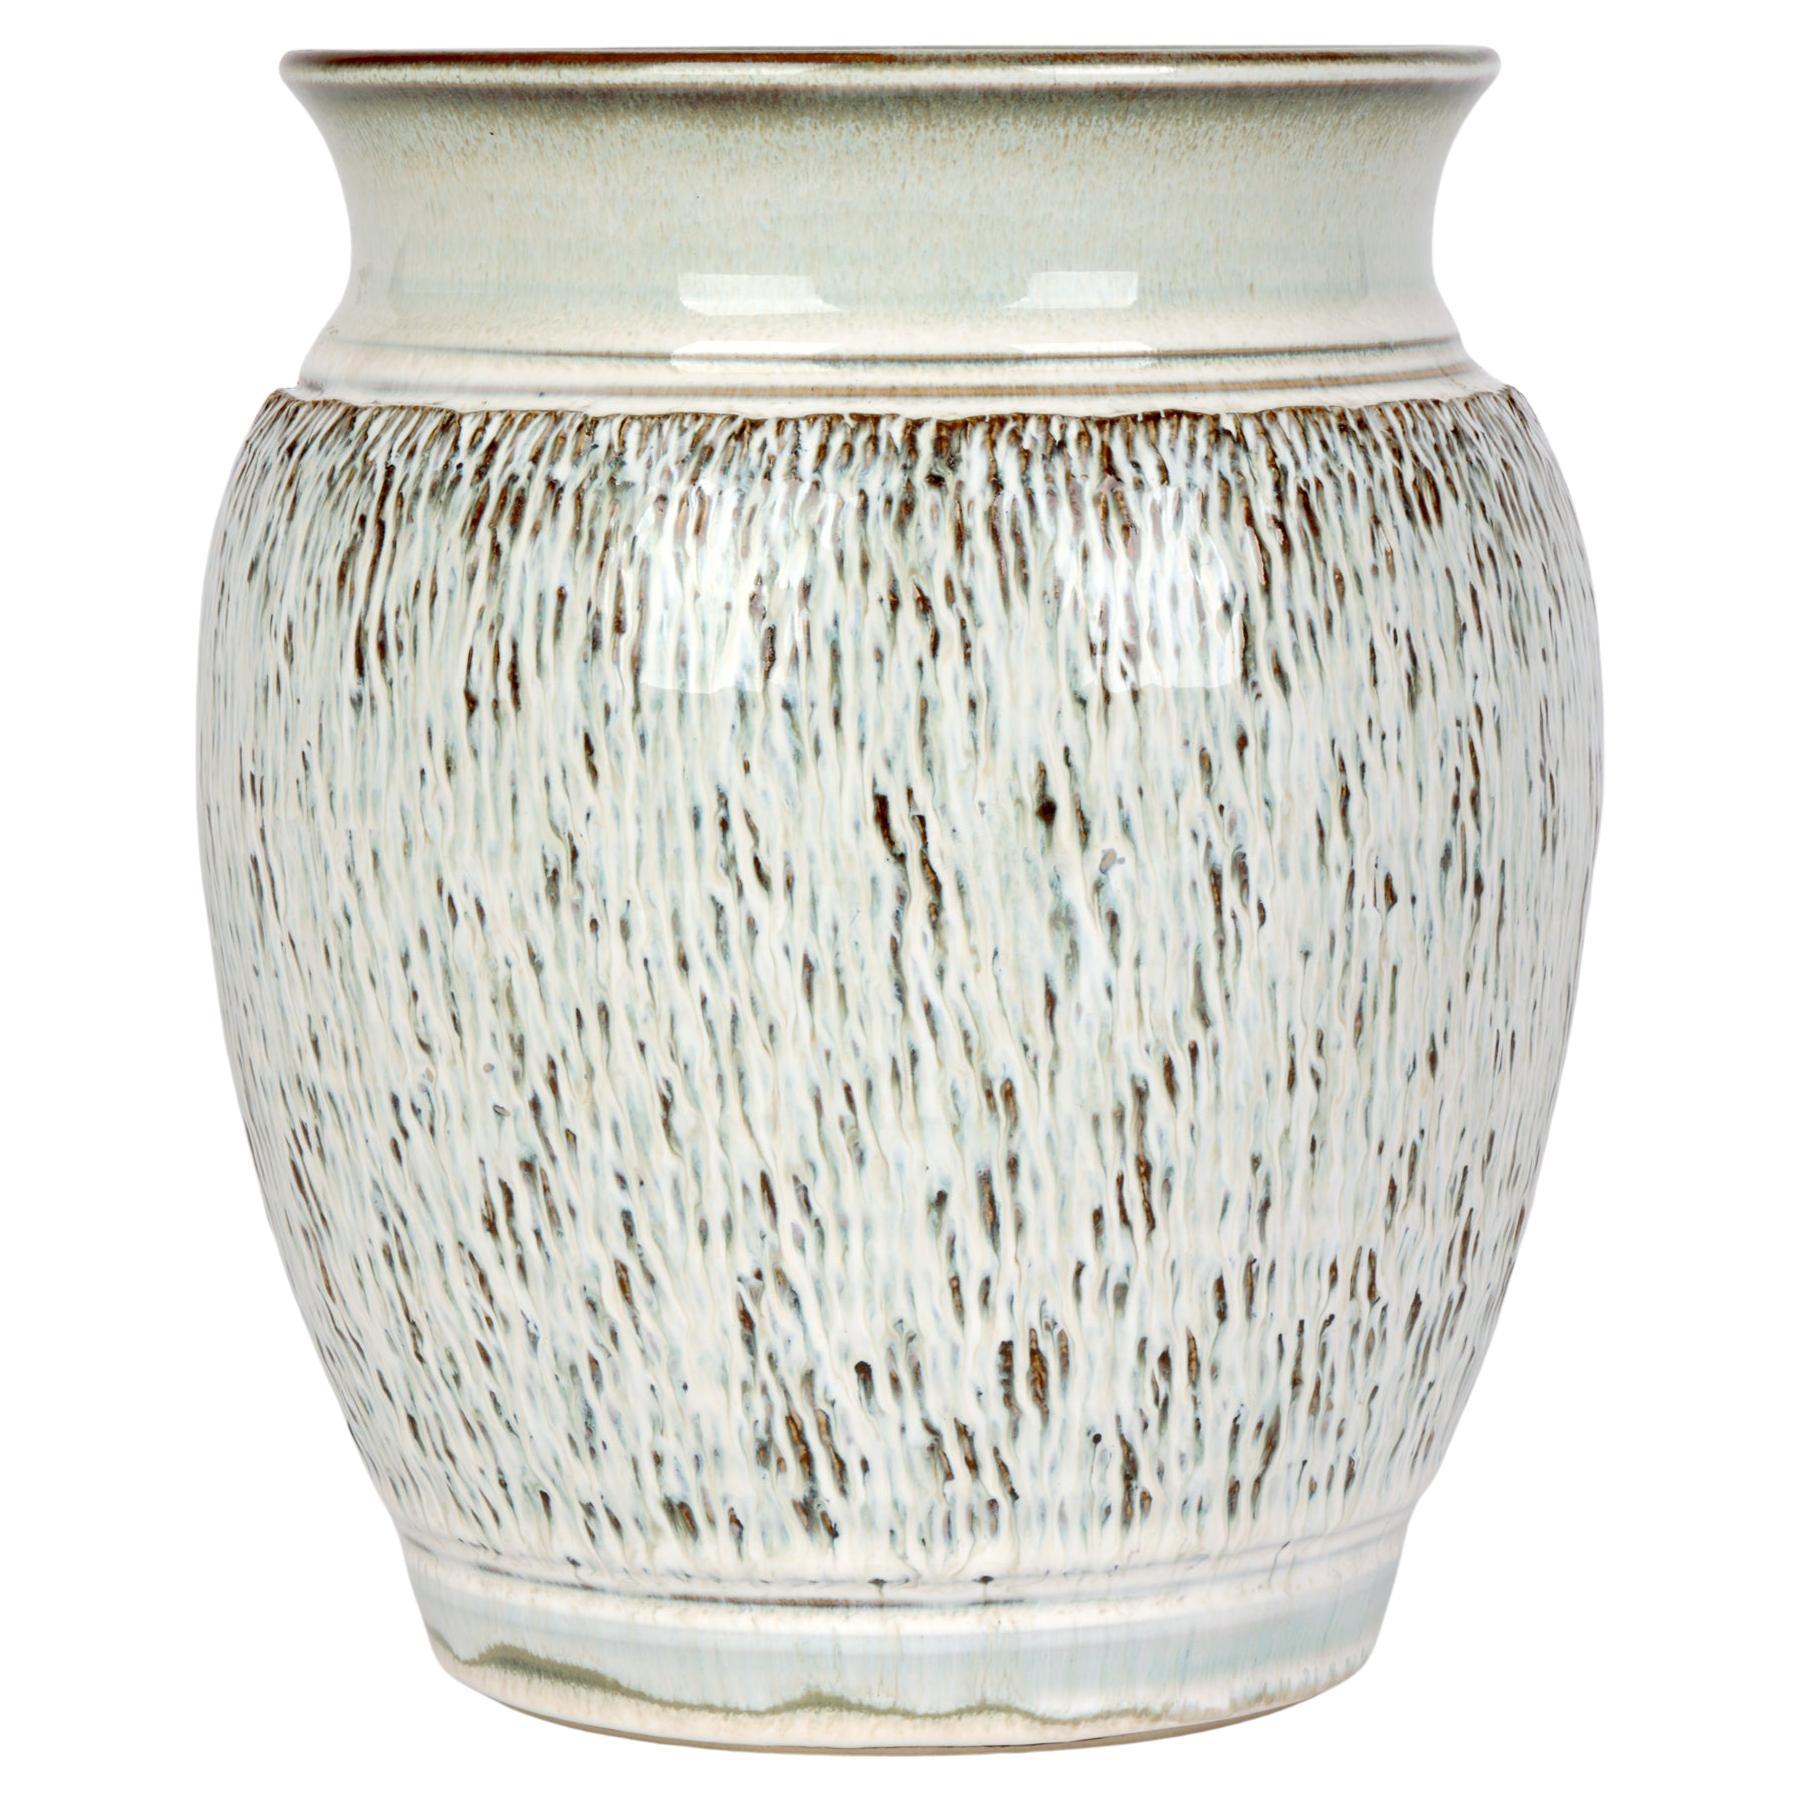 Bauhaus Inspired German Stoneware Vase   For Sale